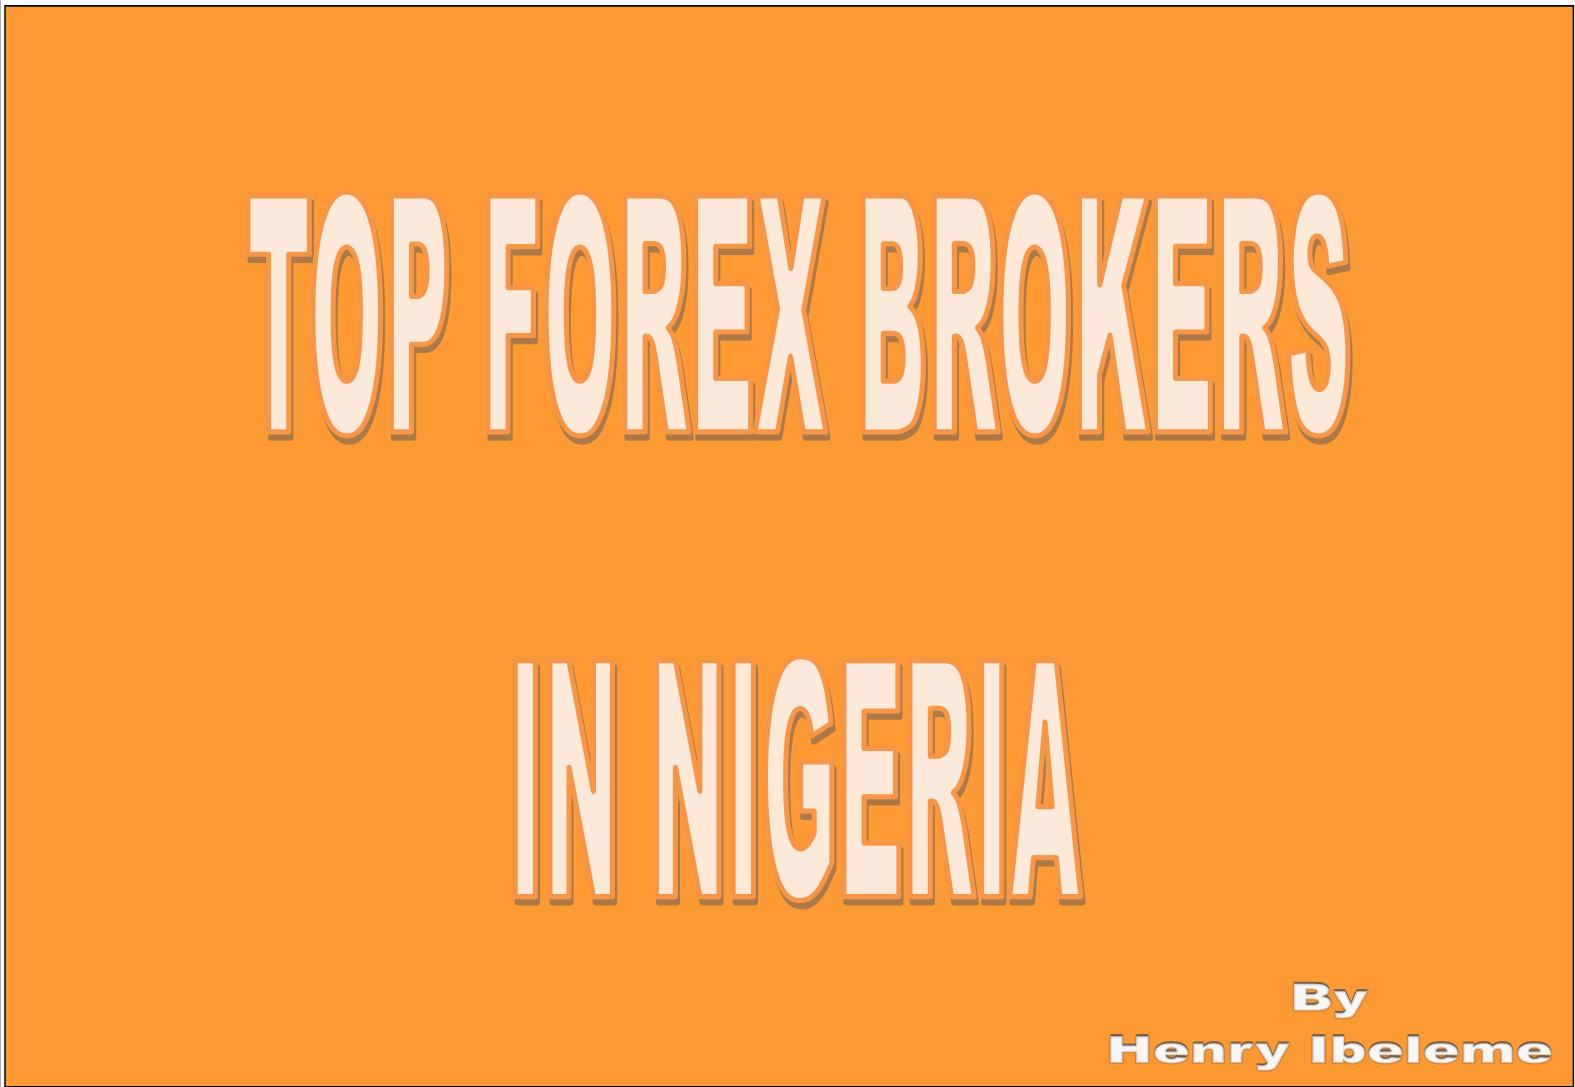 Best forex broker in nigeria